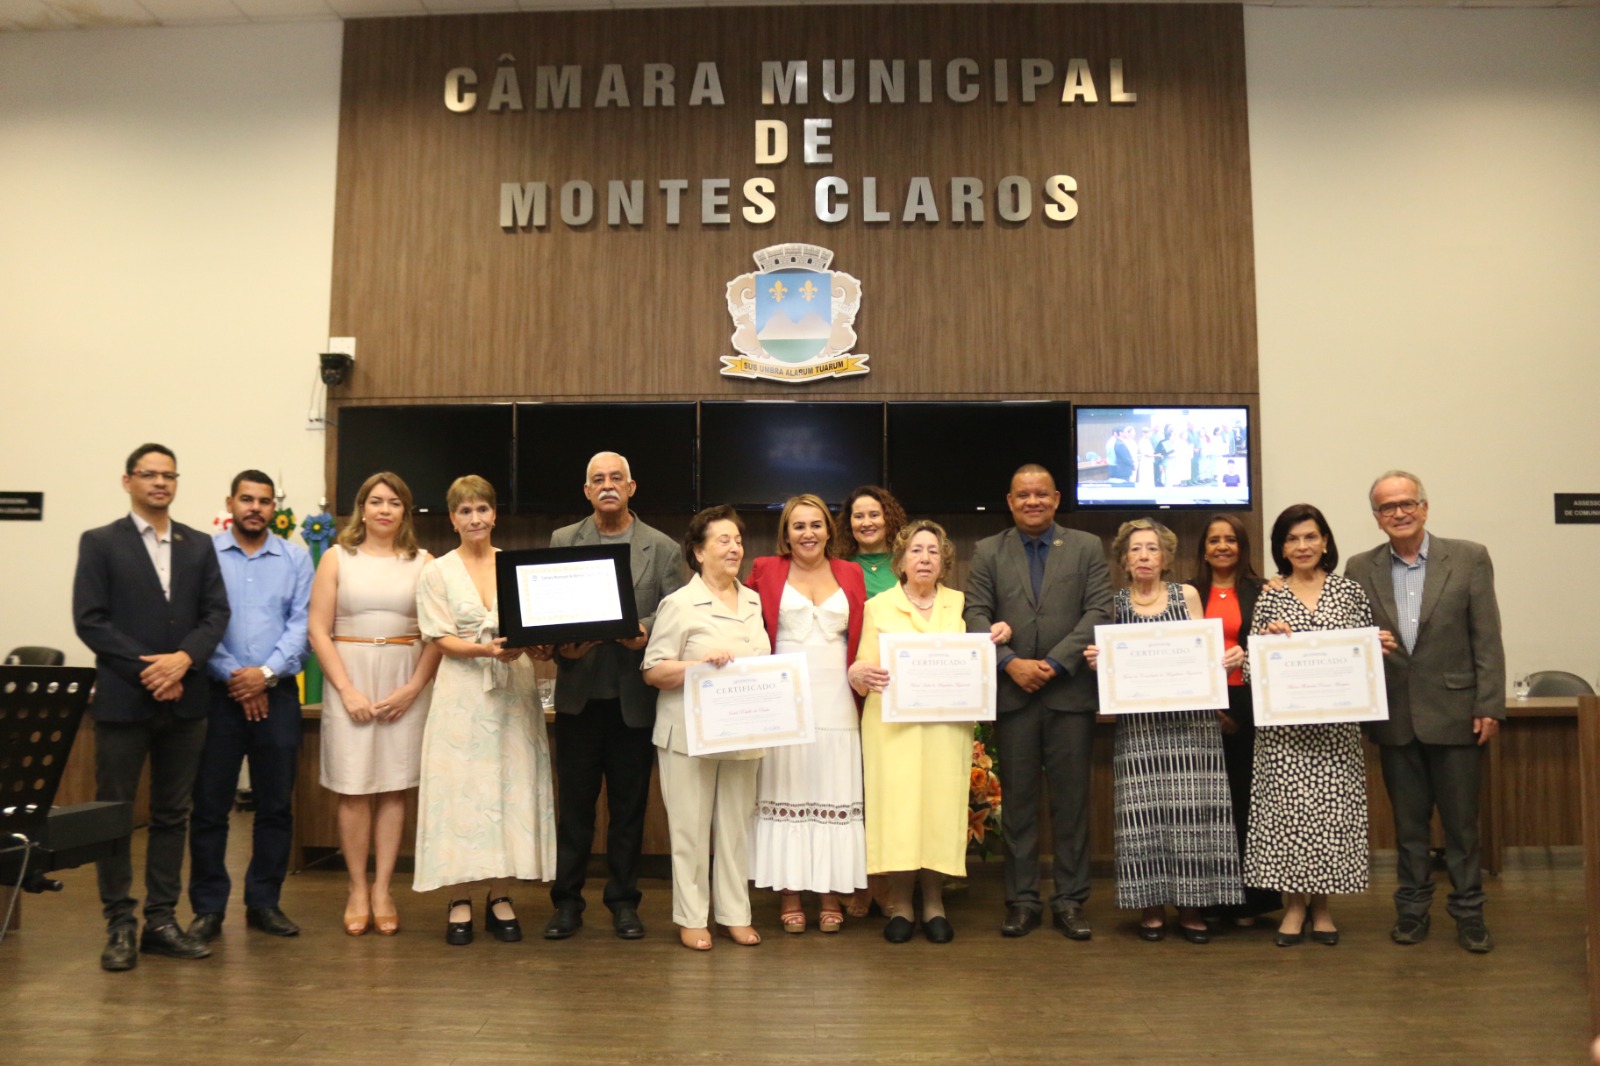 Câmara de Montes Claros homenageia cursos de licenciatura da Unimontes